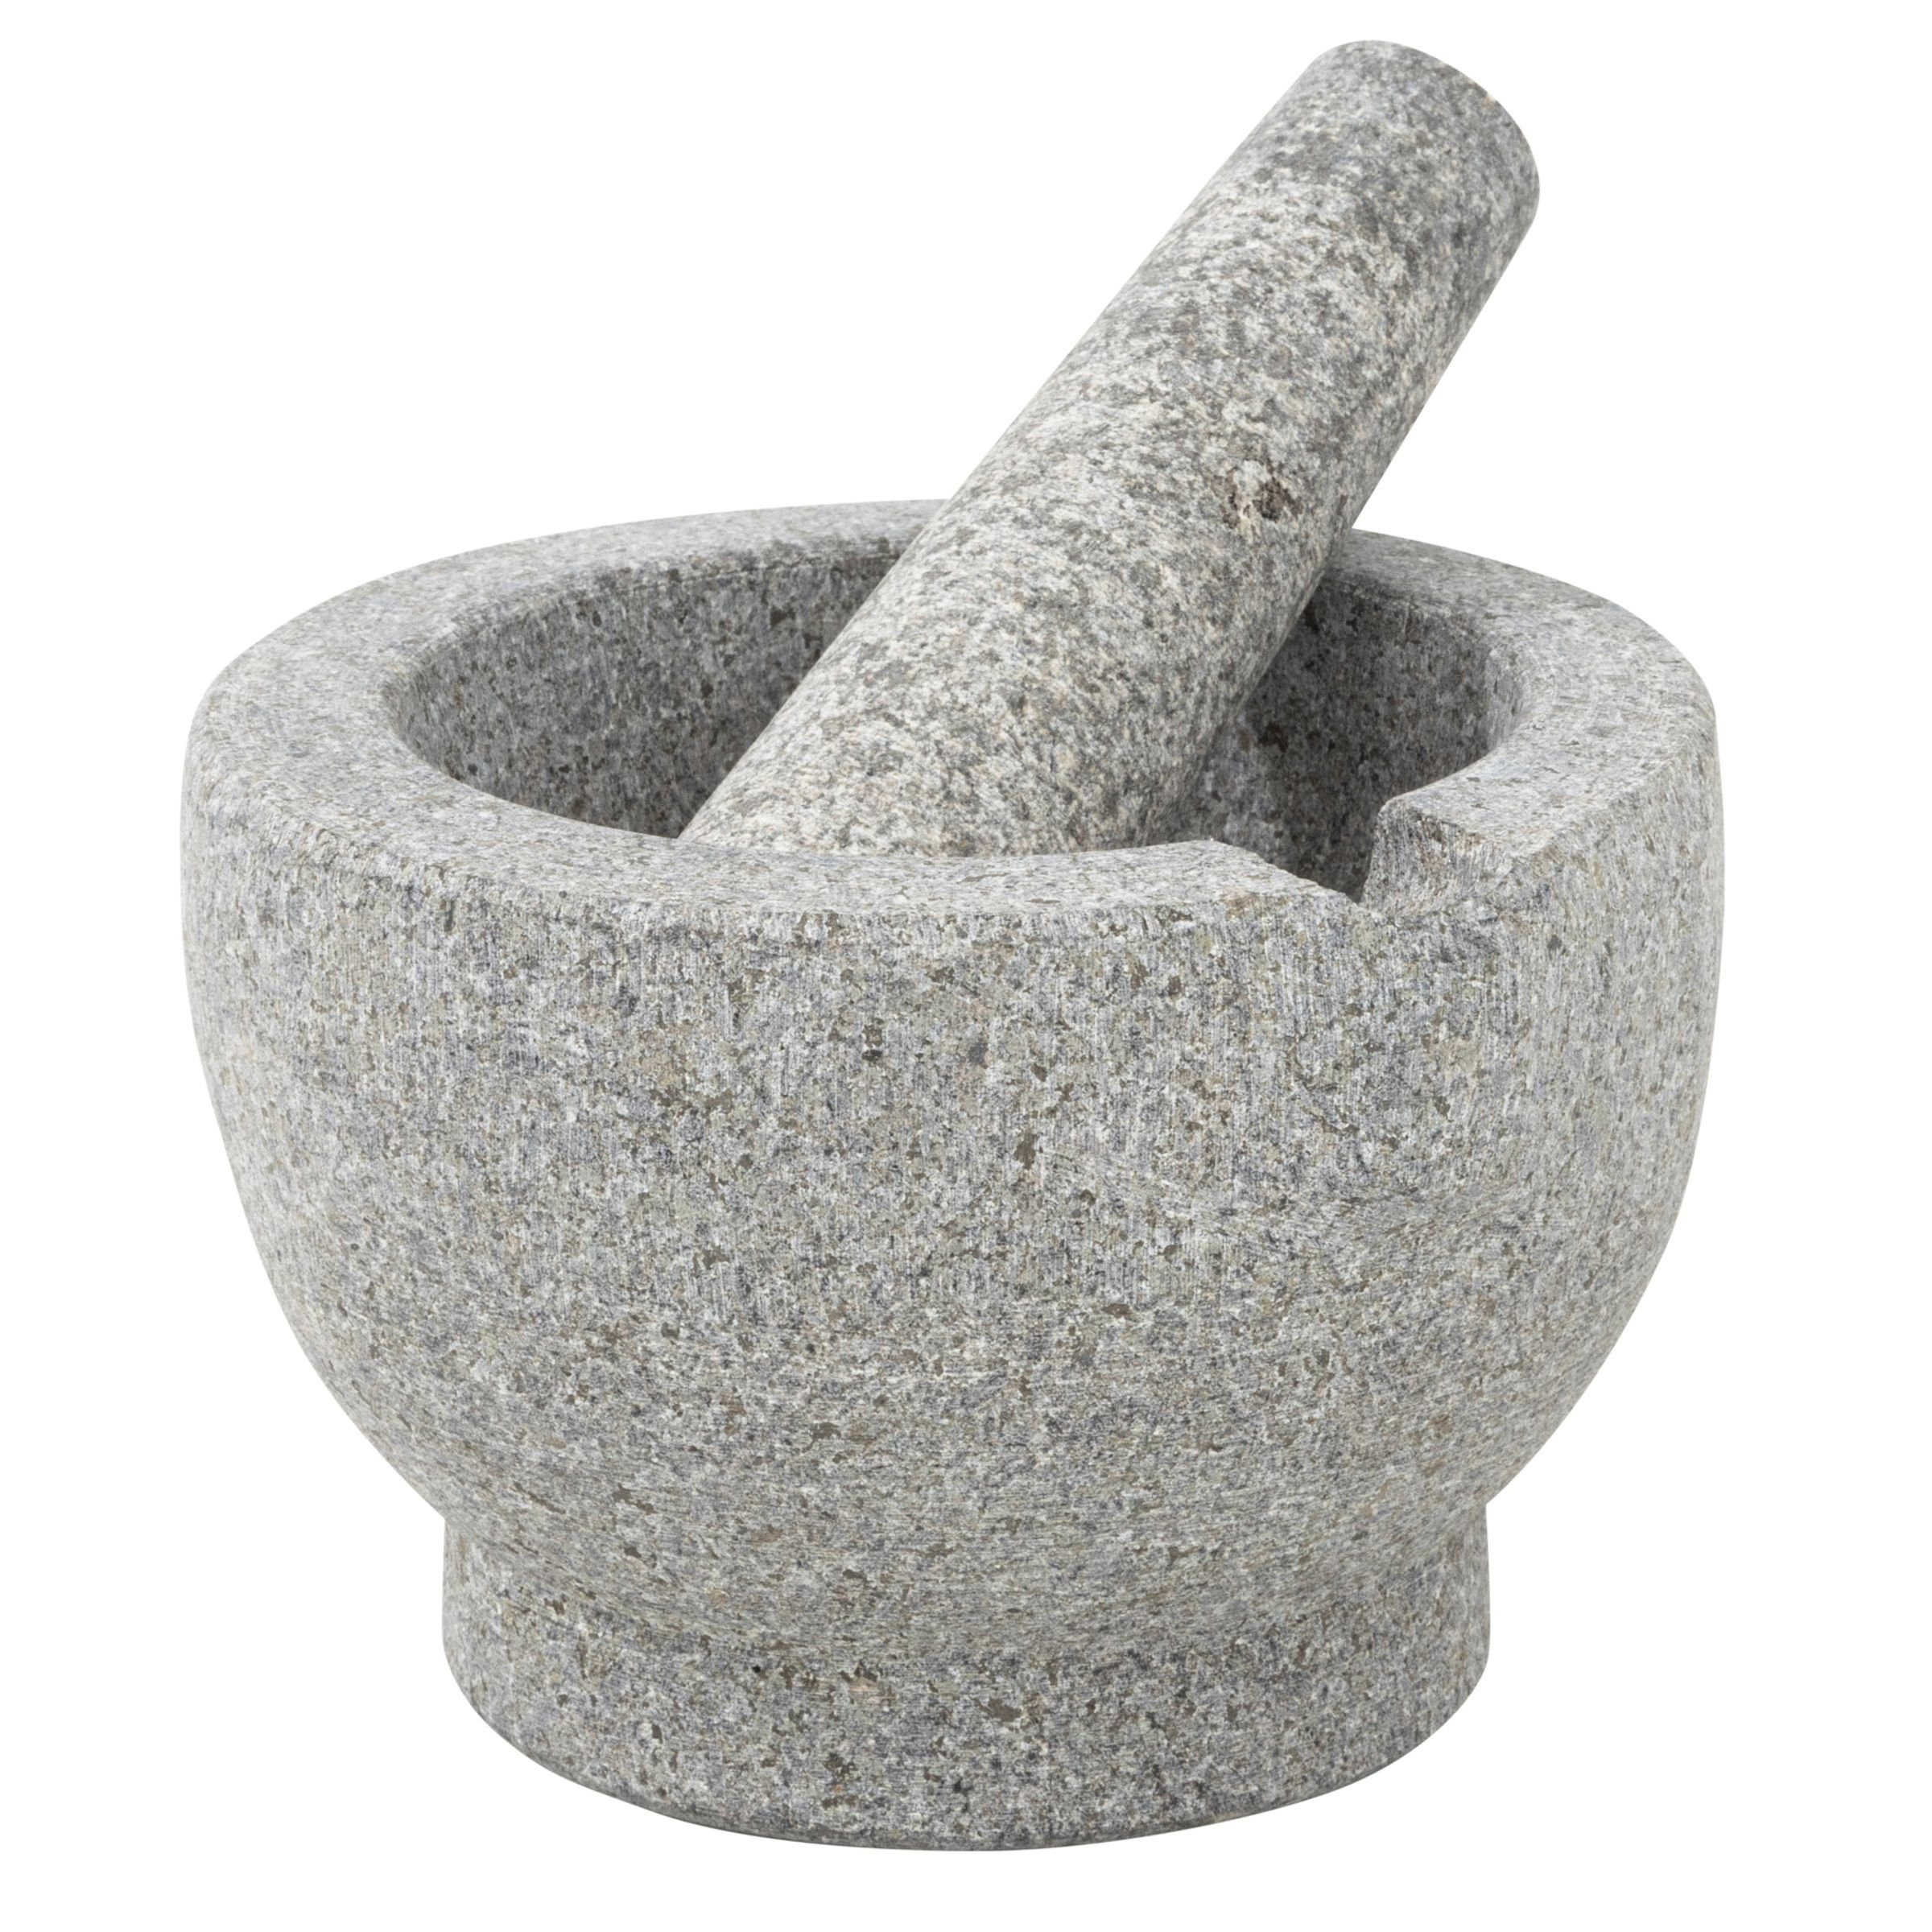 Gewürz Zerkleinerer Reibe Granit mit aus Mörser Mühle Stößel Gravidus Mörser